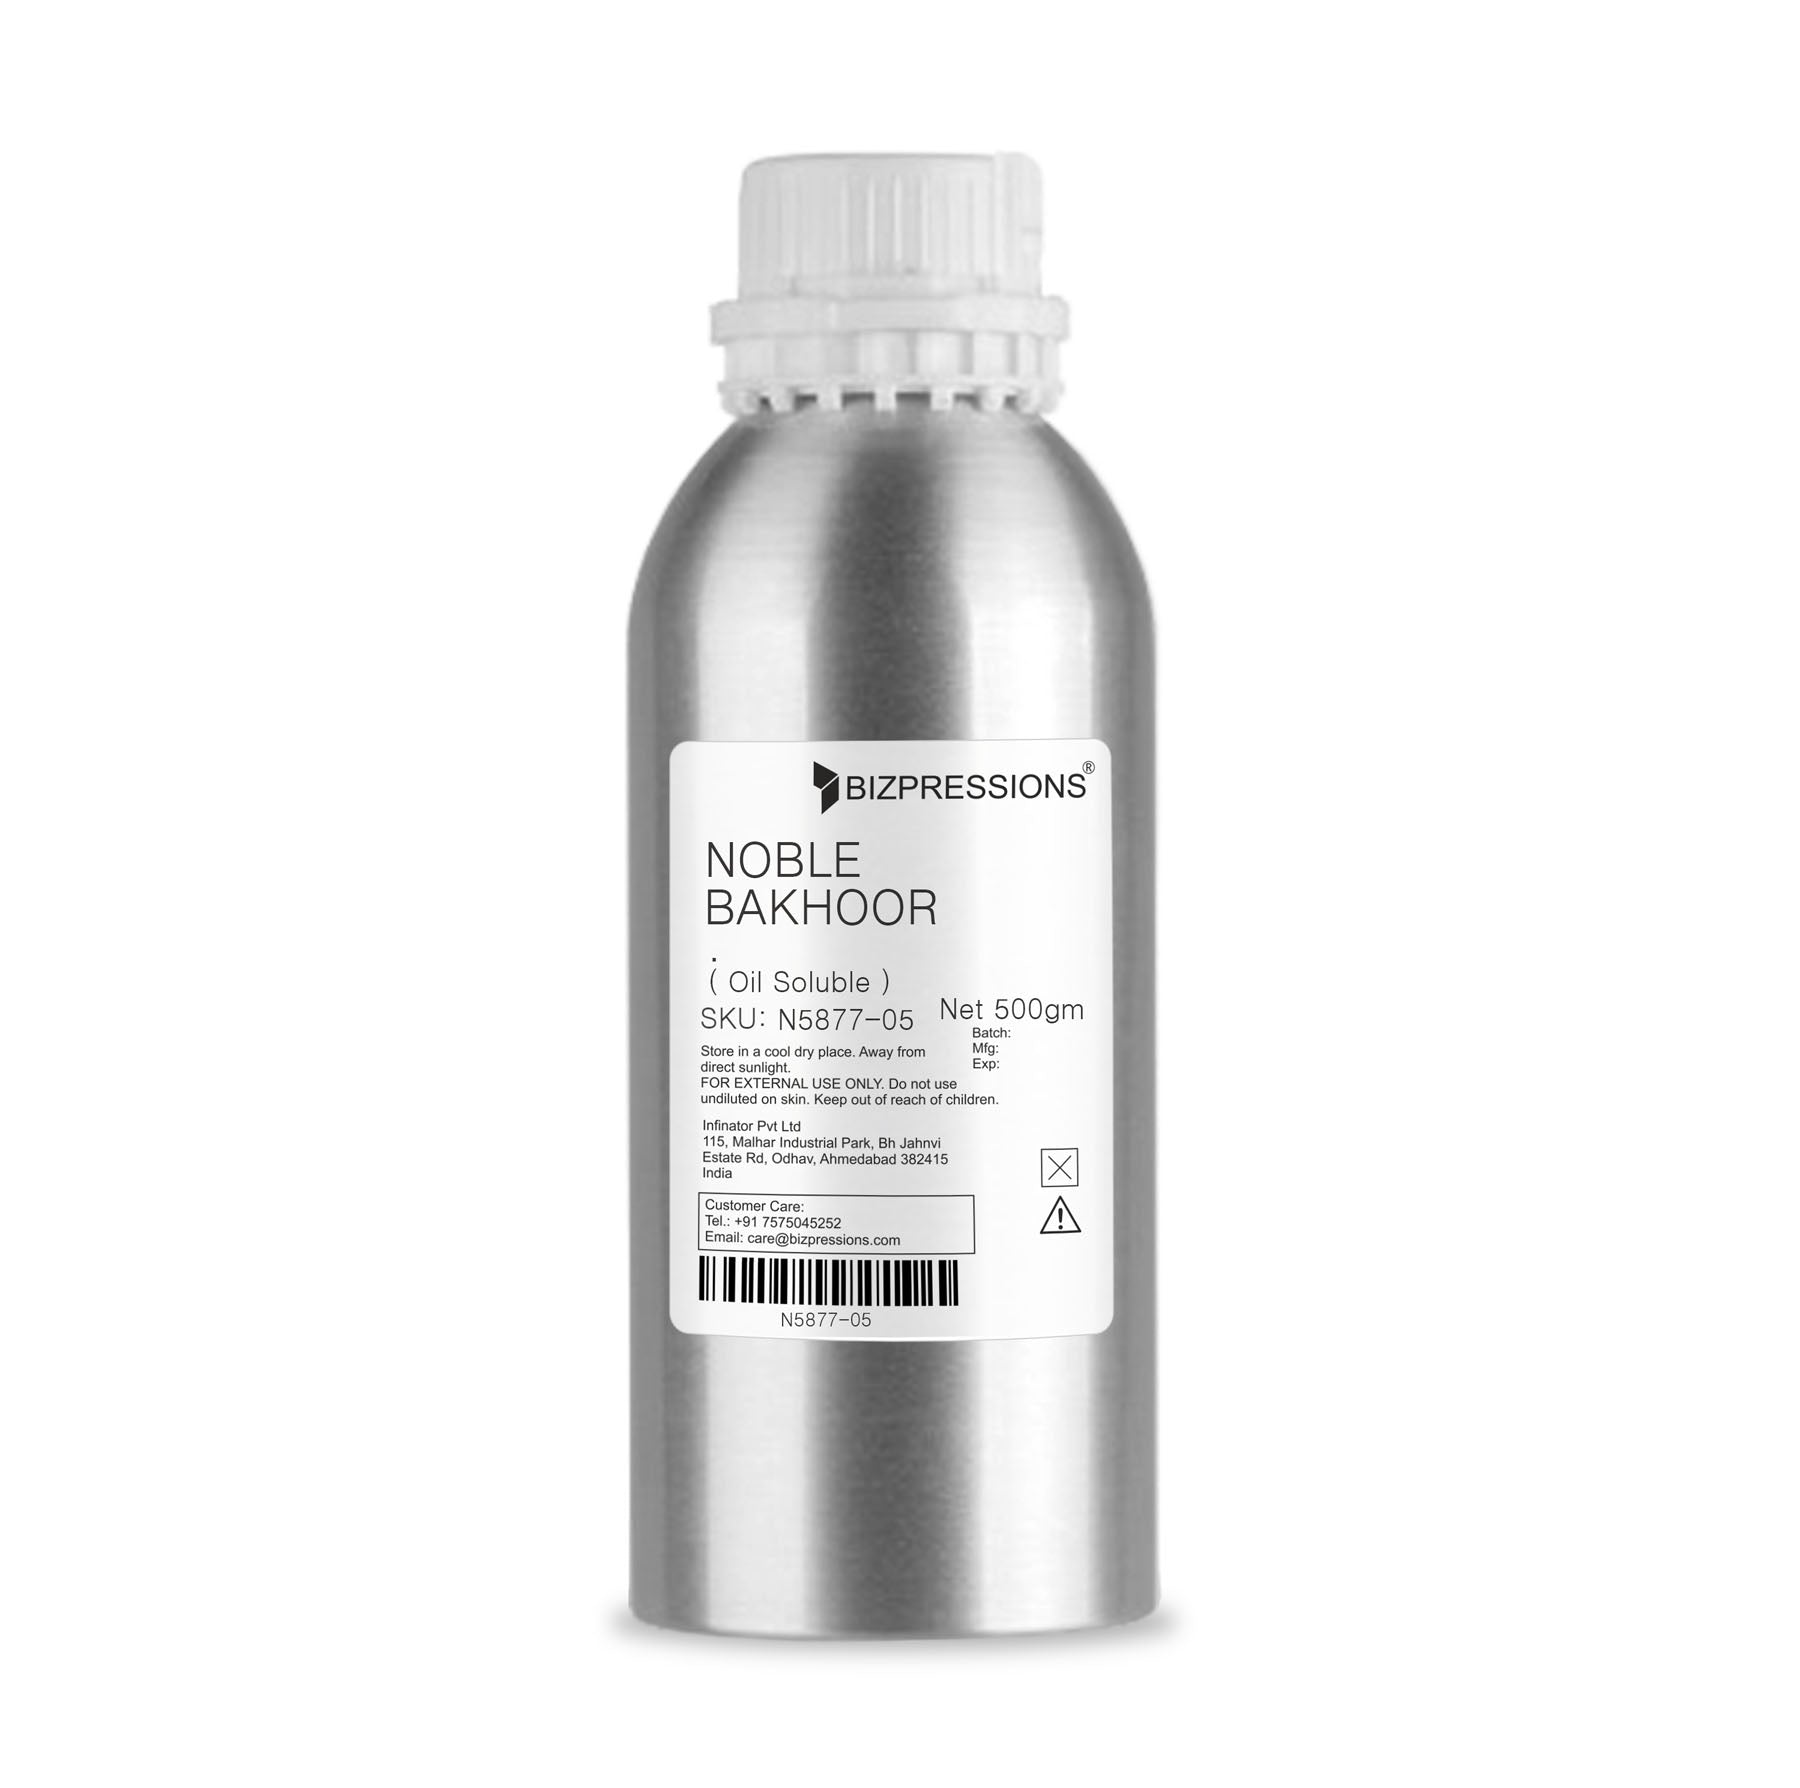 NOBLE BAKHOOR - Fragrance ( Oil Soluble ) - 500 gm